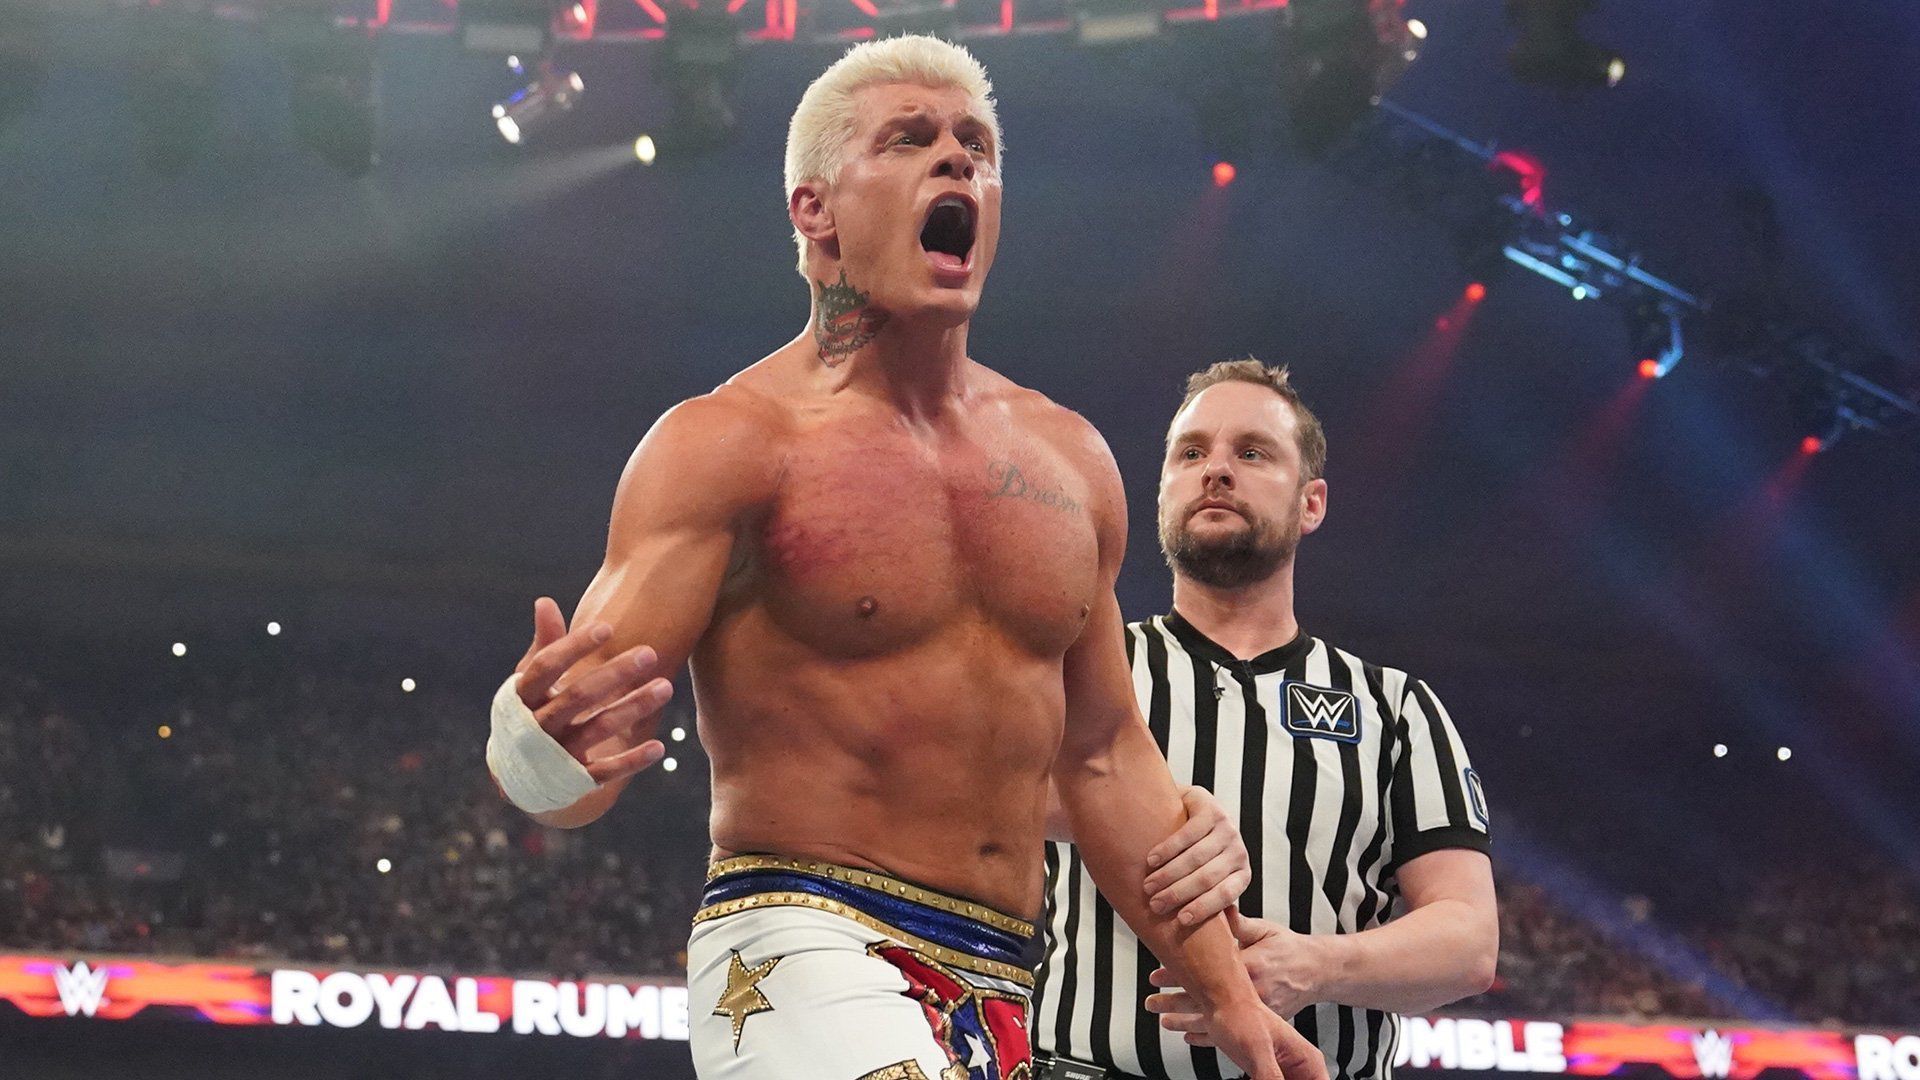 Cody Rhodes at the 2023 Royal Rumble